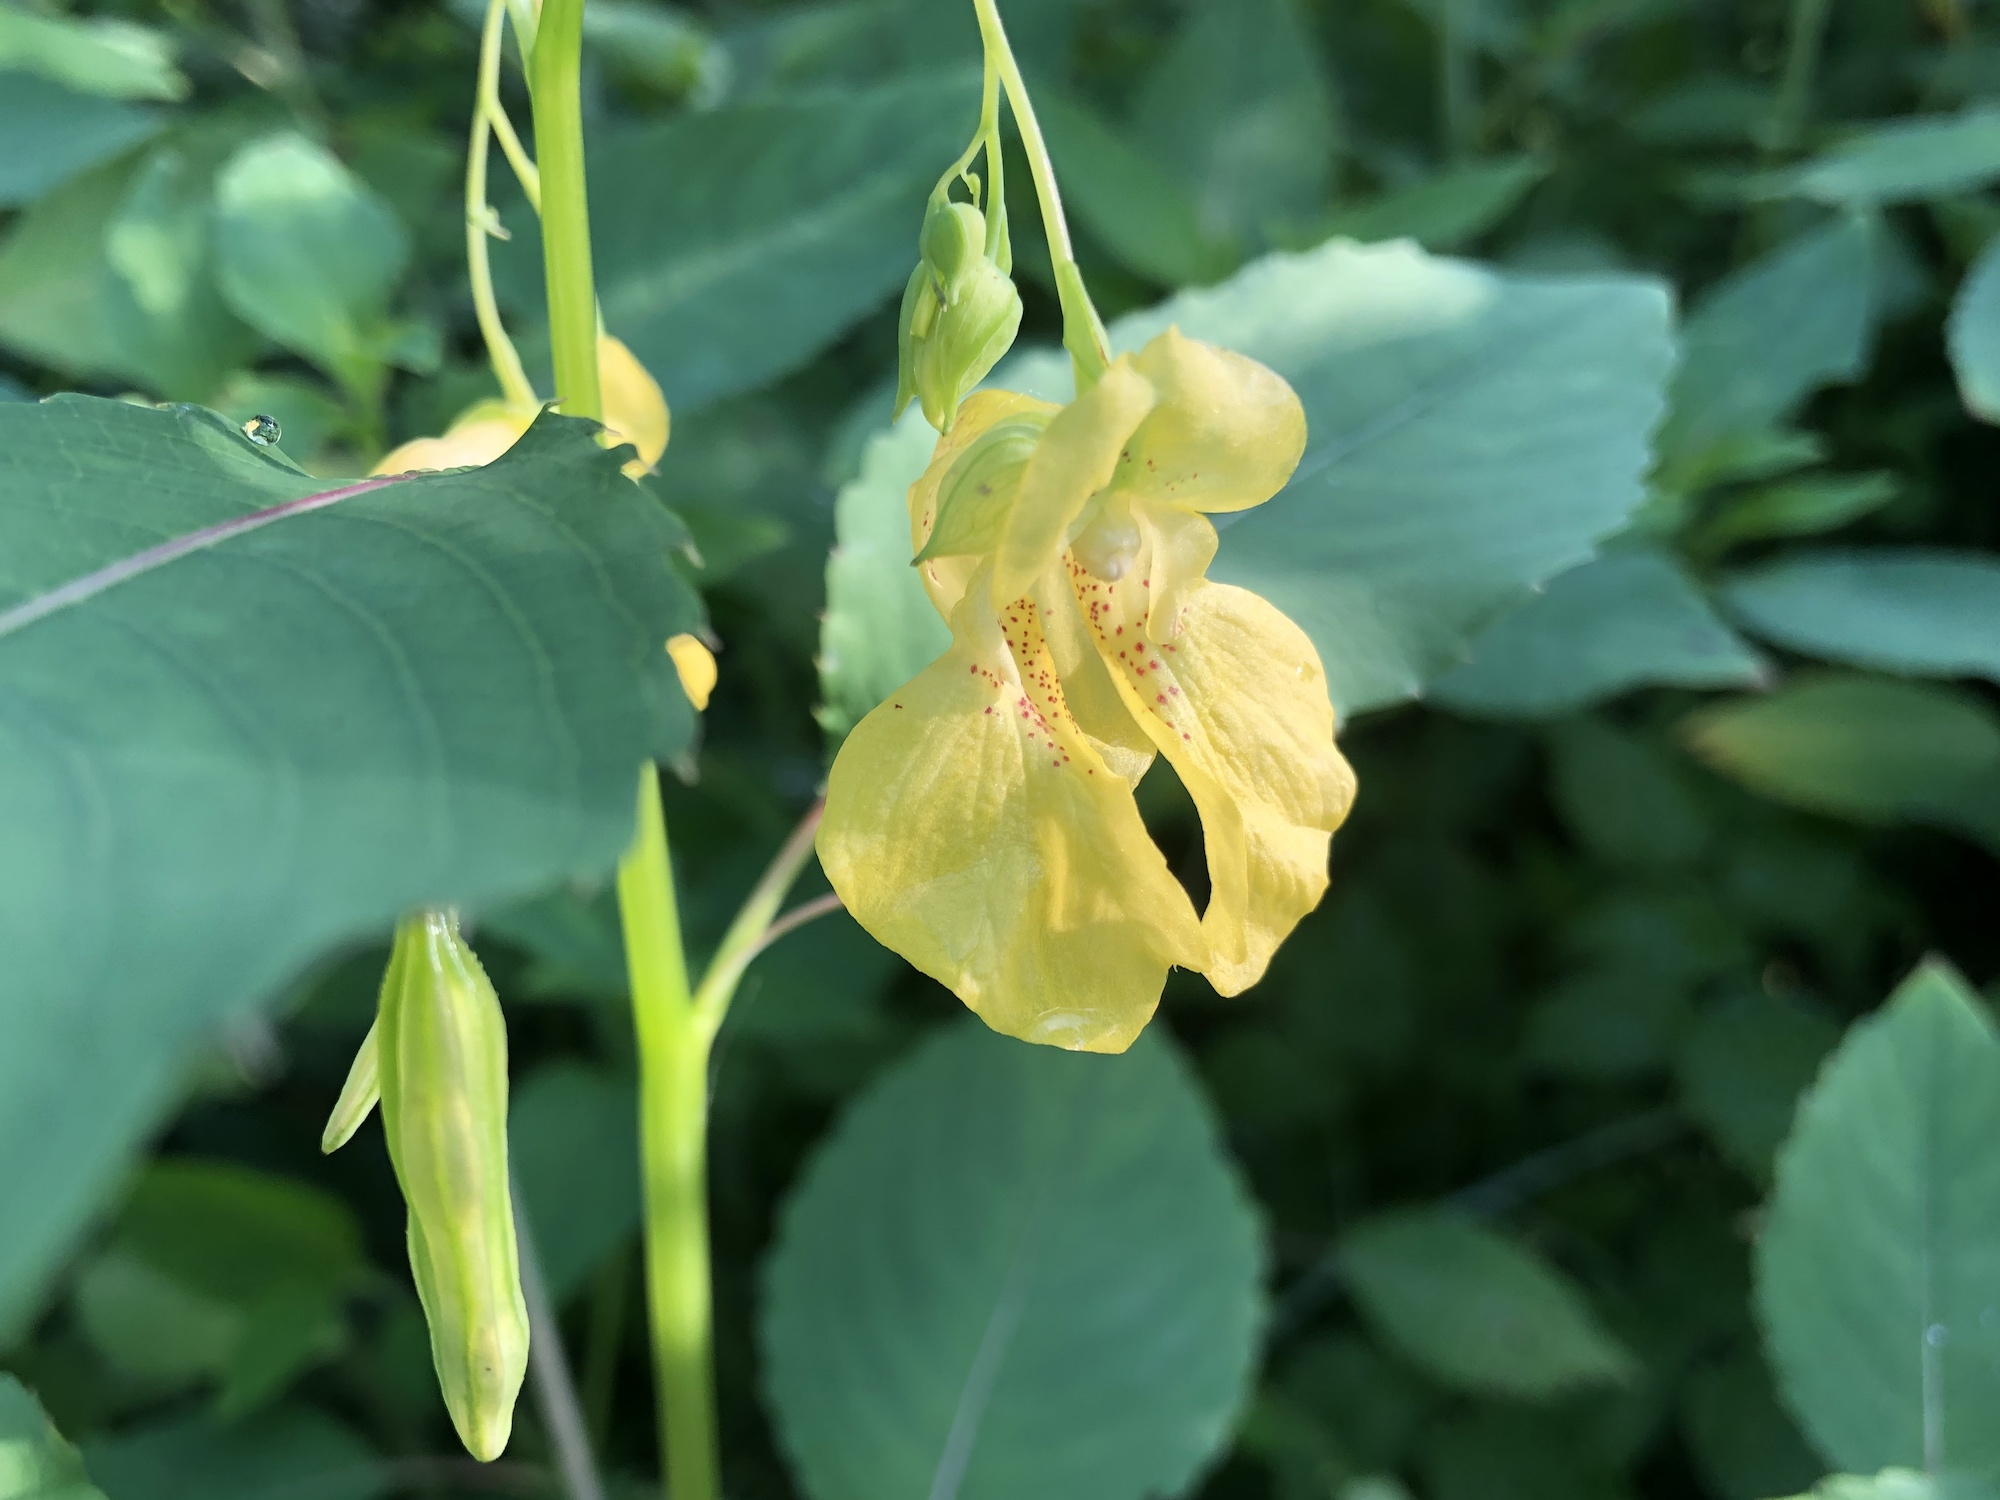 Yellow Jewelweed in the Oak Savanna on July 11, 2019.